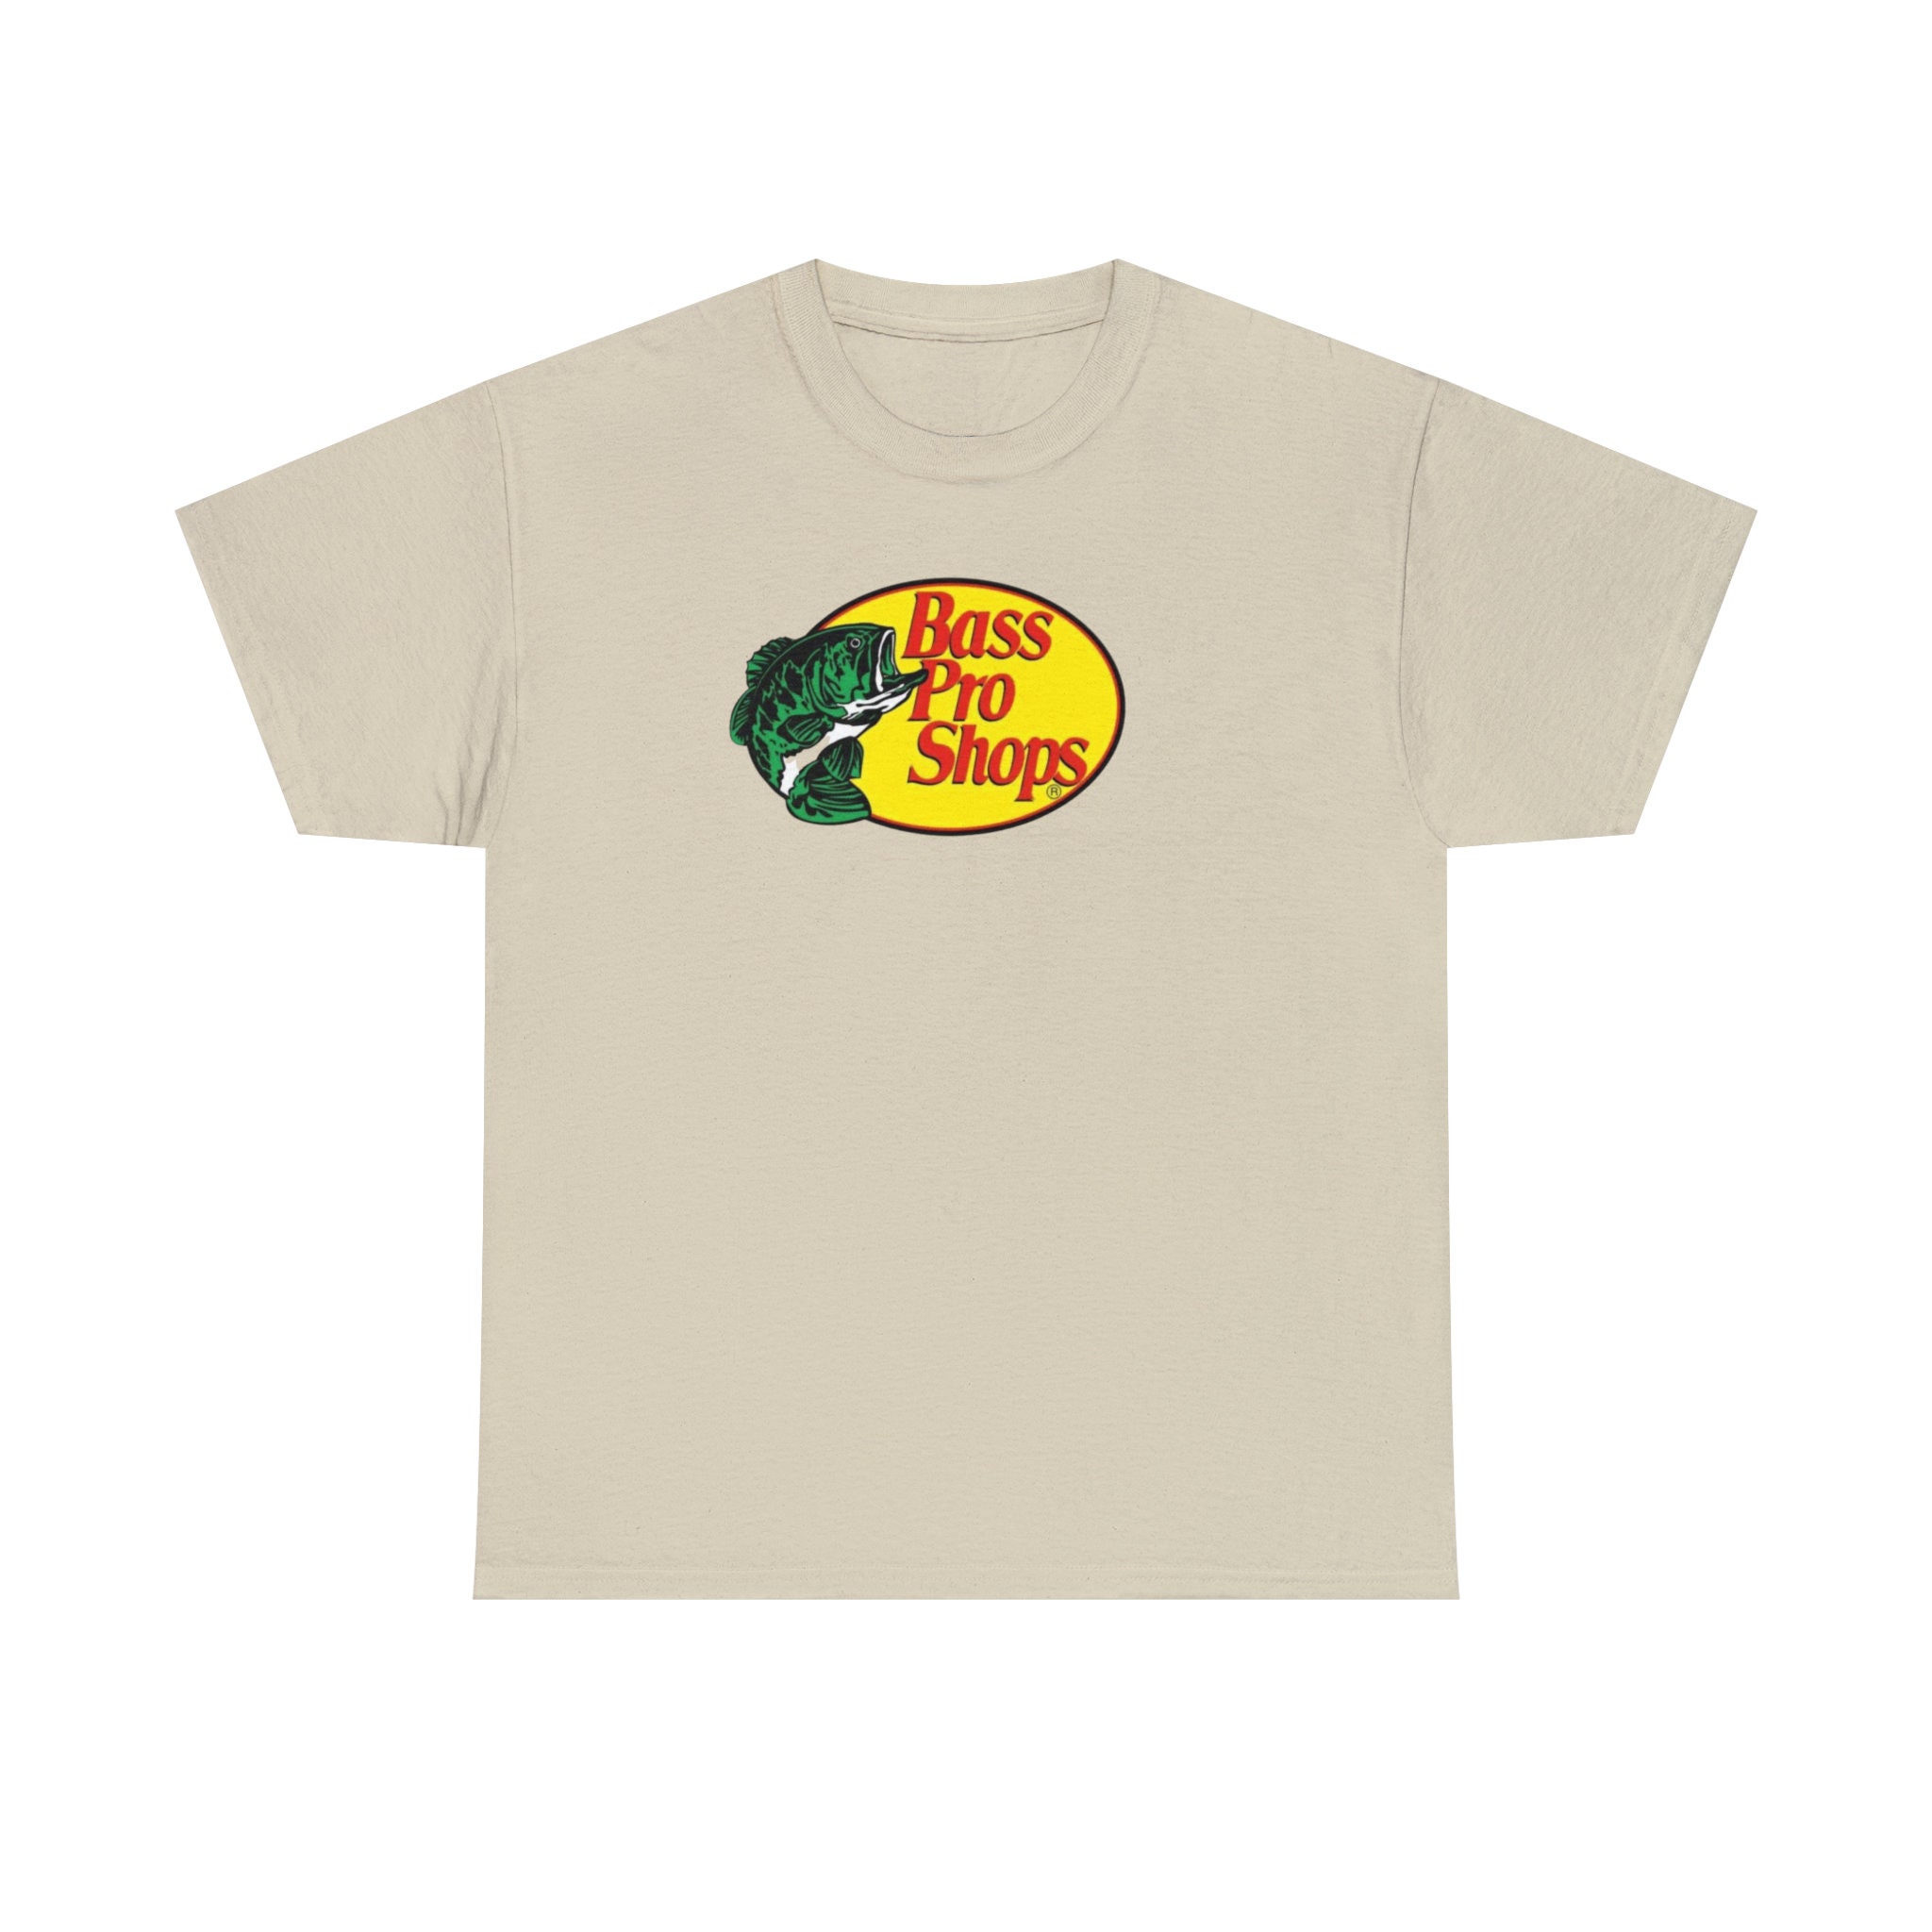 Bass Pro Shops T-shirt.t-shirt for Men. T-shirt for Women. Summer T-shirt.  Perfect for a Gift 